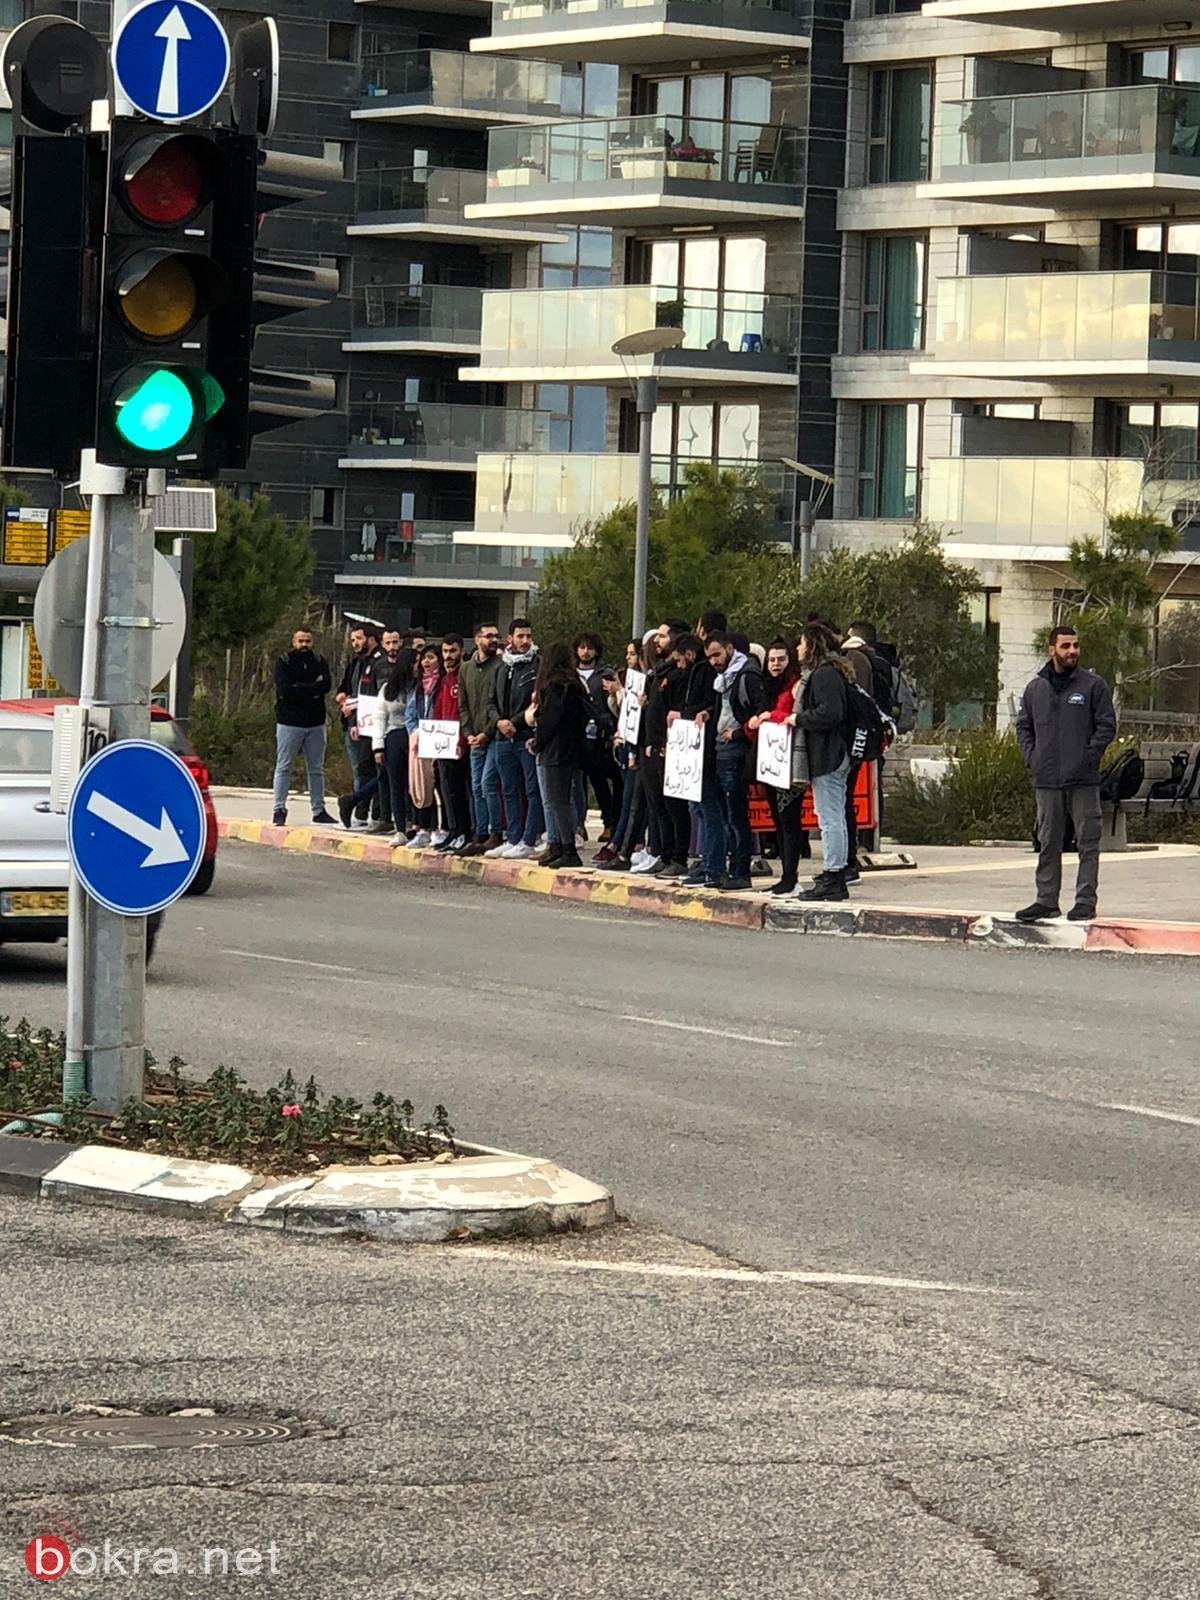 حيفا: طلاب عرب من الجامعة يتظاهرون ضد صفقة القرن-9